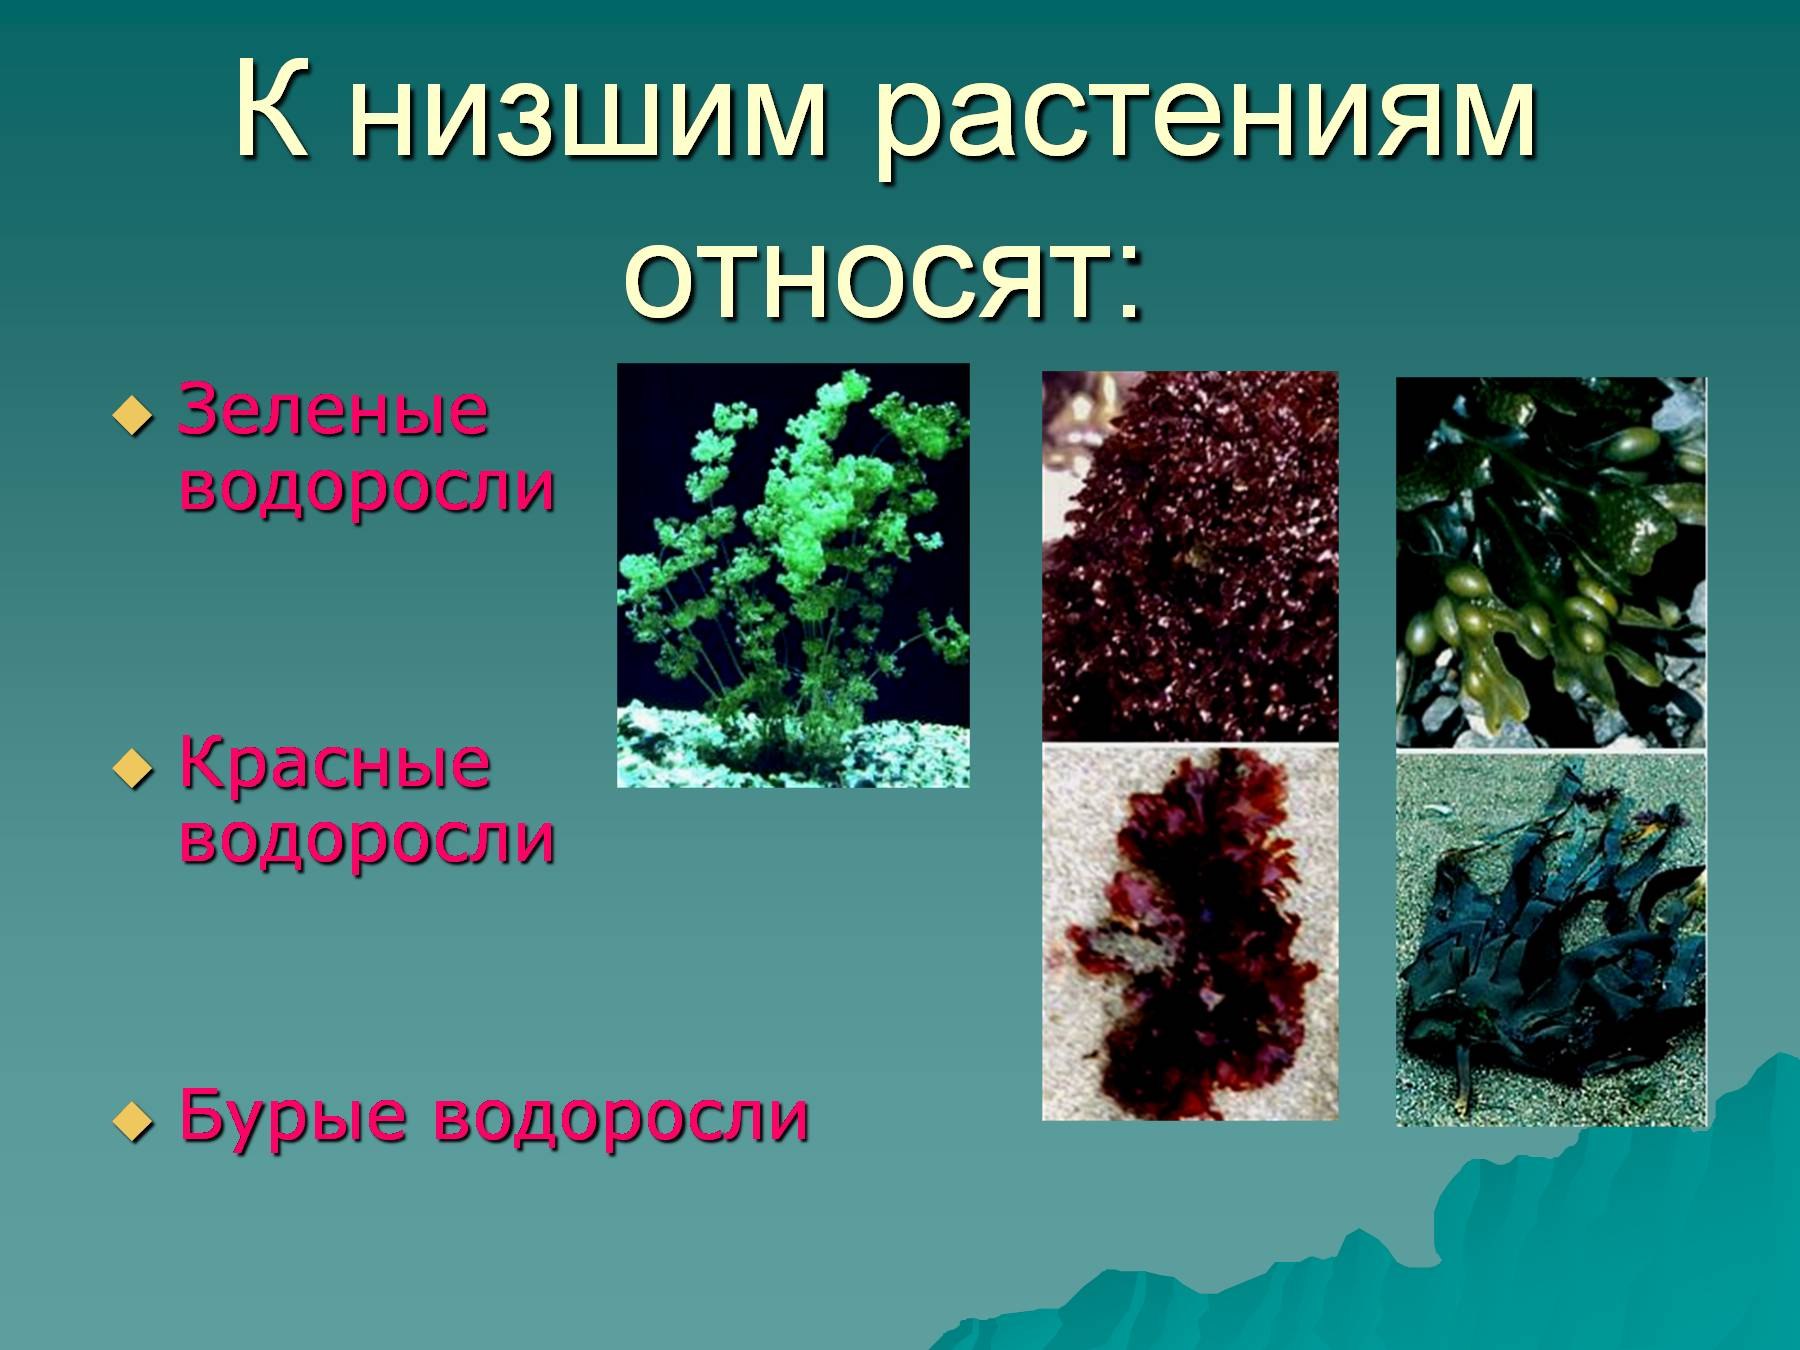 Известно что водоросли относятся к низшим растениям. Низшие растения. Растения которые относятся к низшим. Низкие растения. Название низших растений.